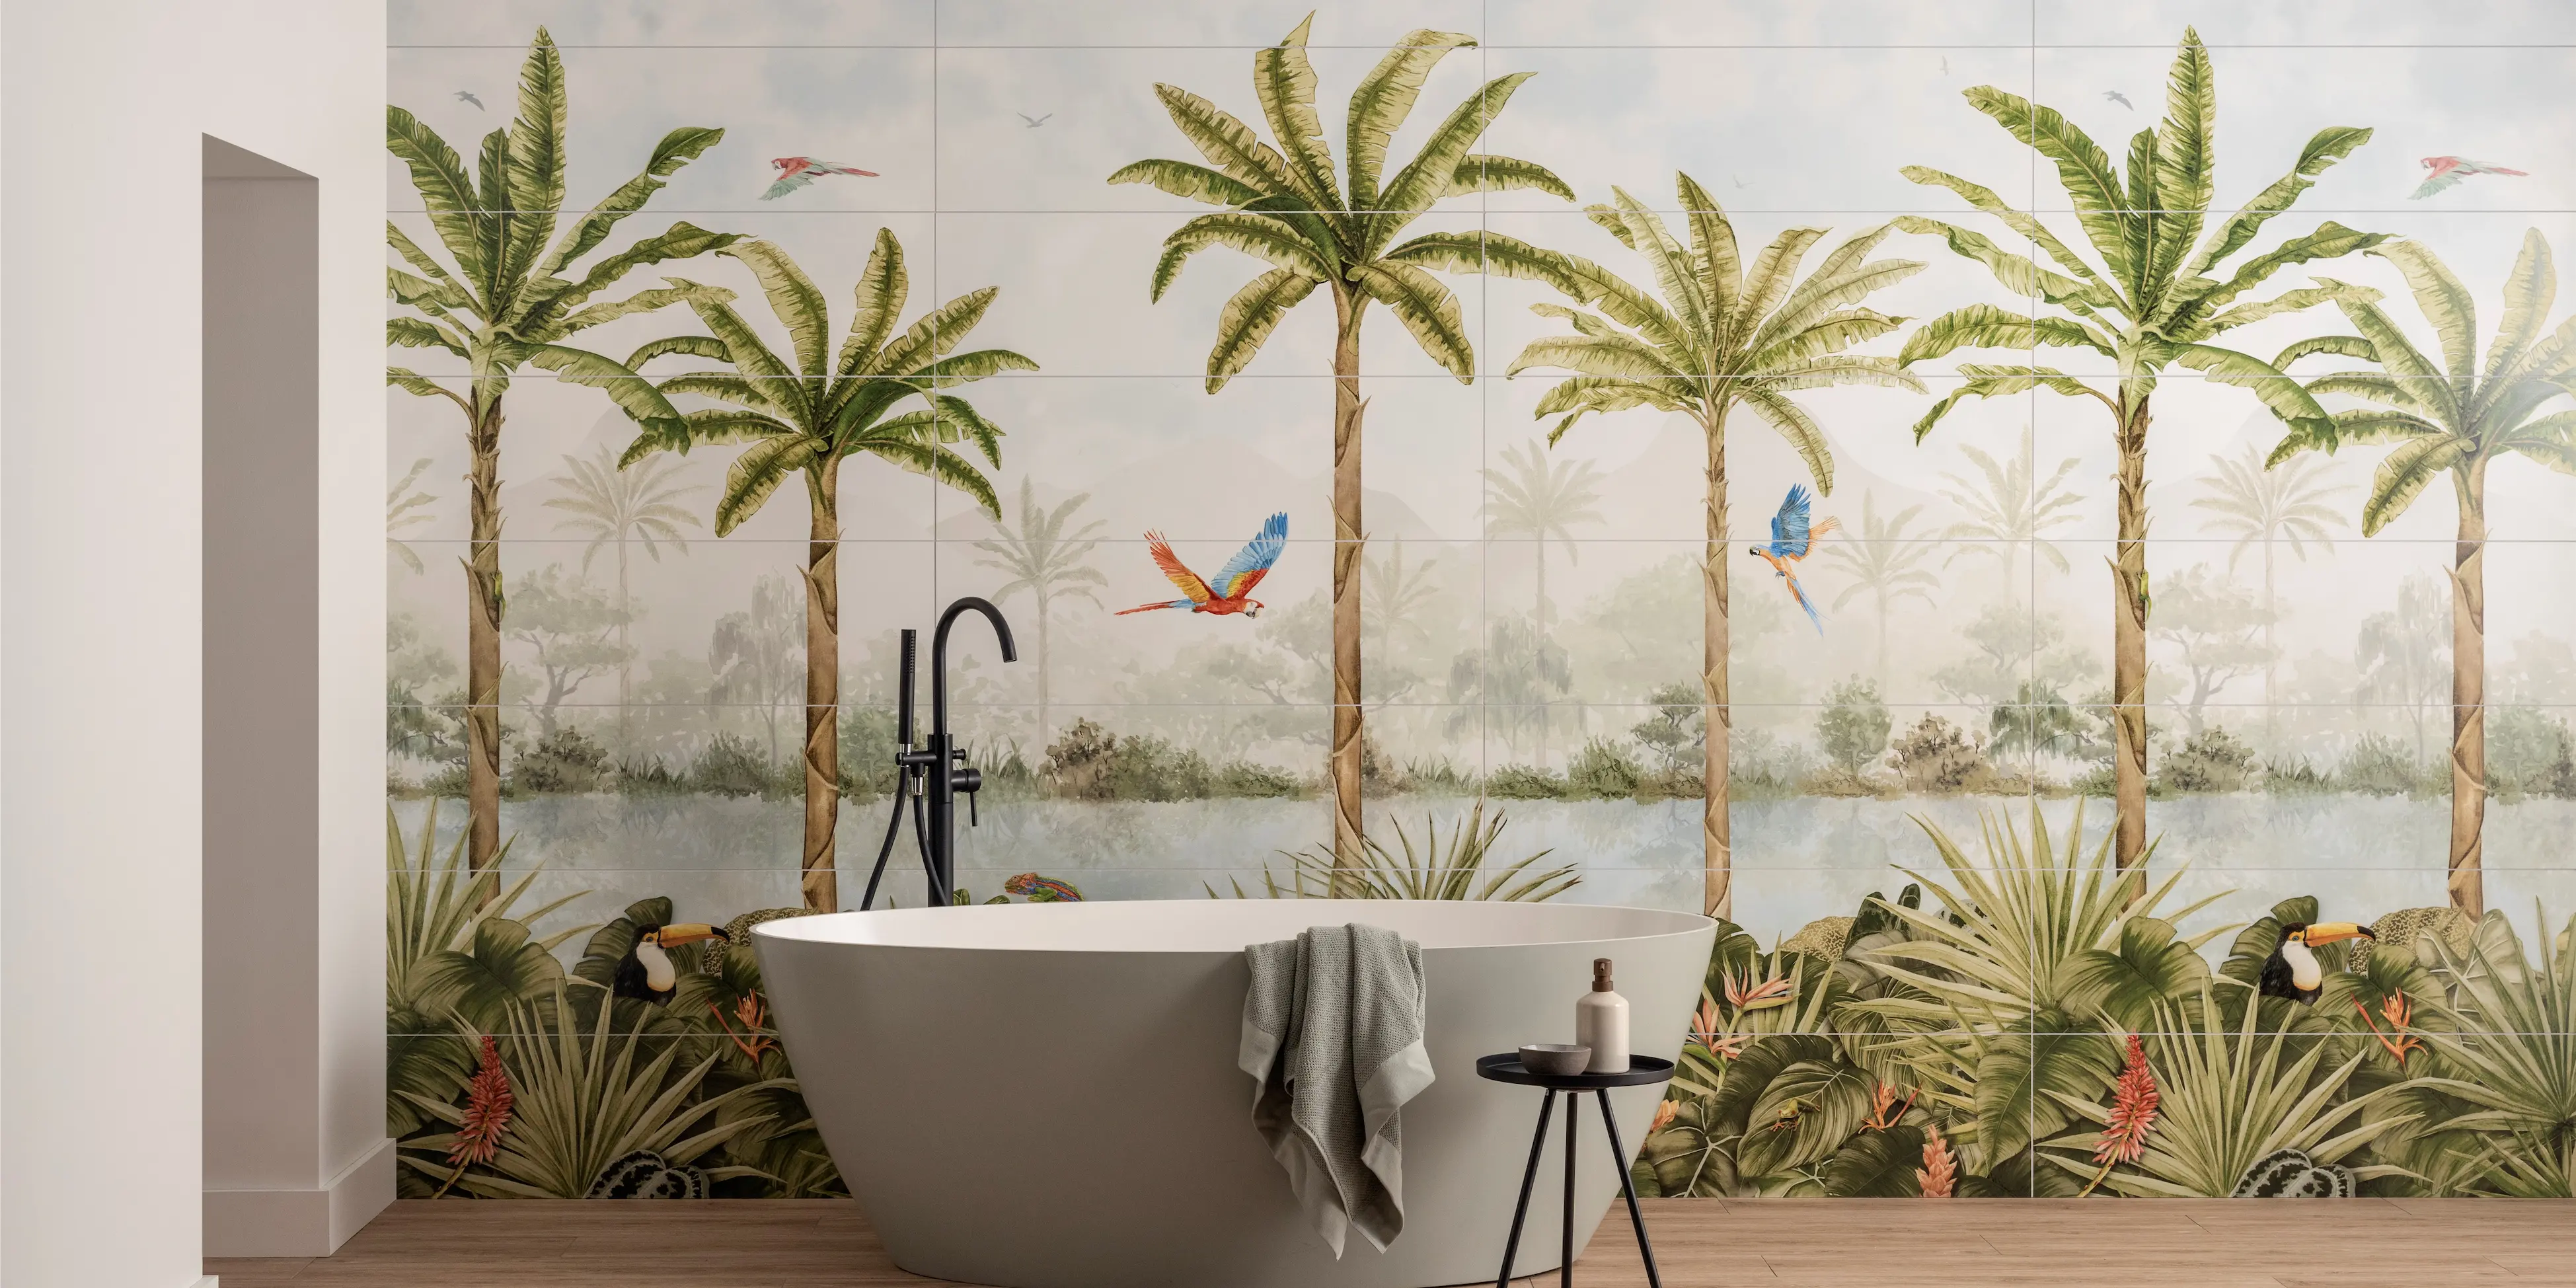 En farverig vægflise med palmer og papegøjer, suppleret af et trælook flisegulv og et moderne hvidt badekar, som fuldever den unikke badeværelse stil.